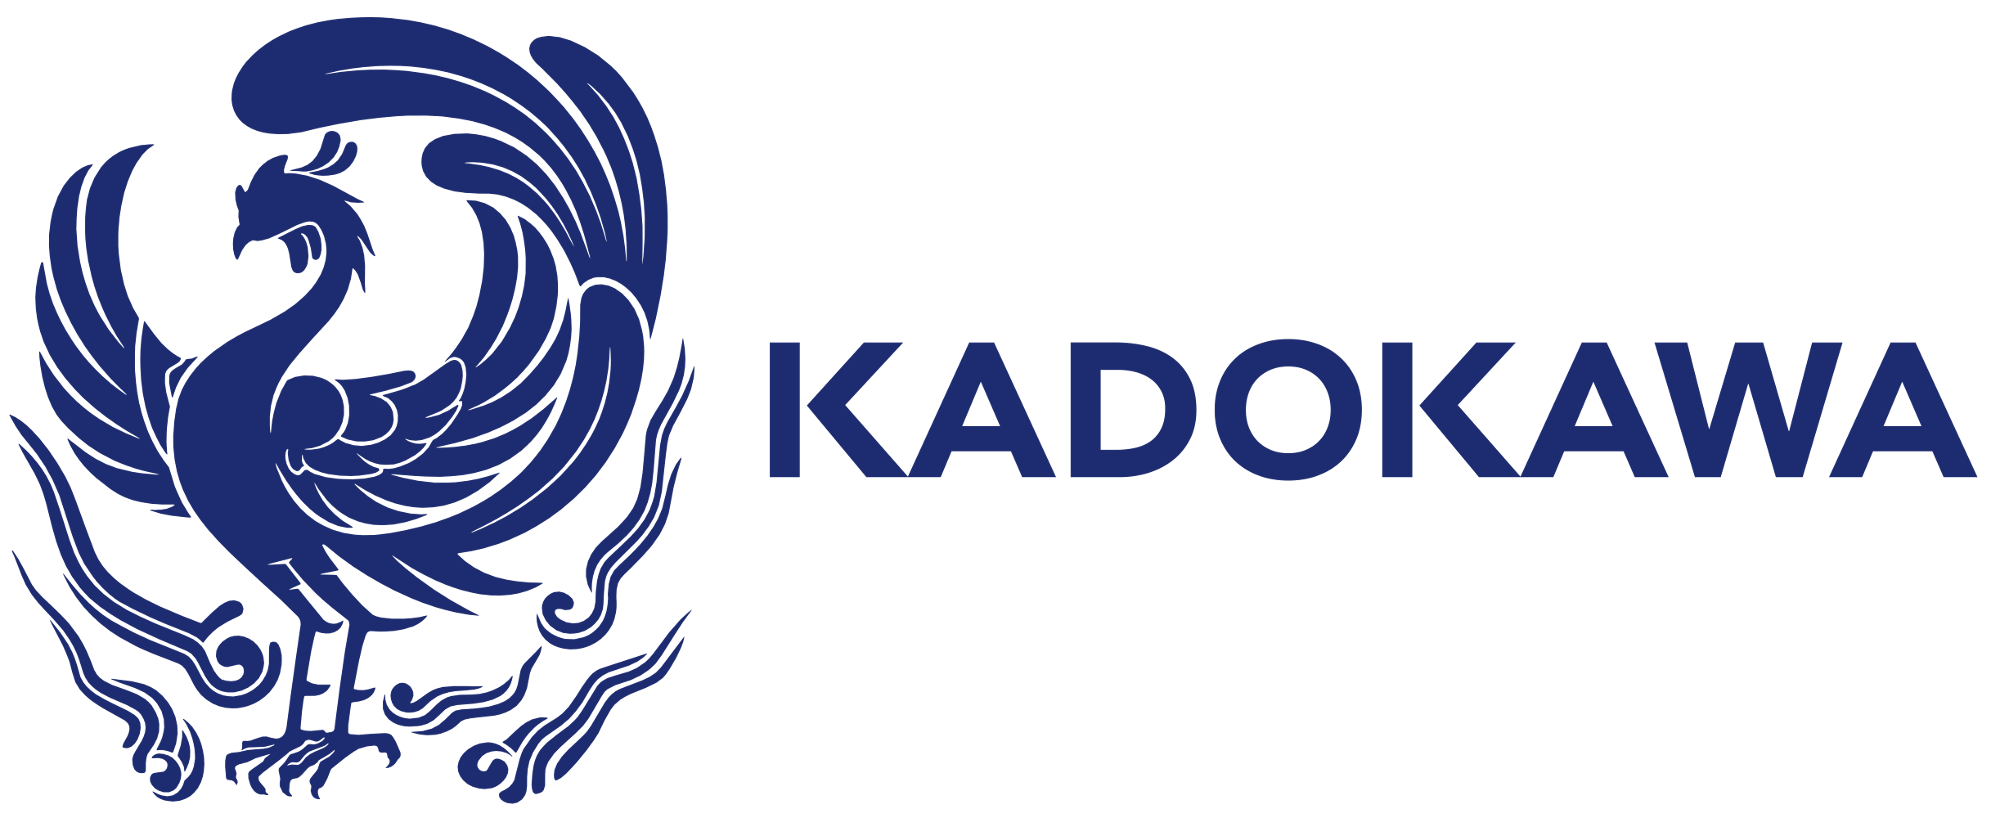 KADOKAWA to produce 40 anime per year